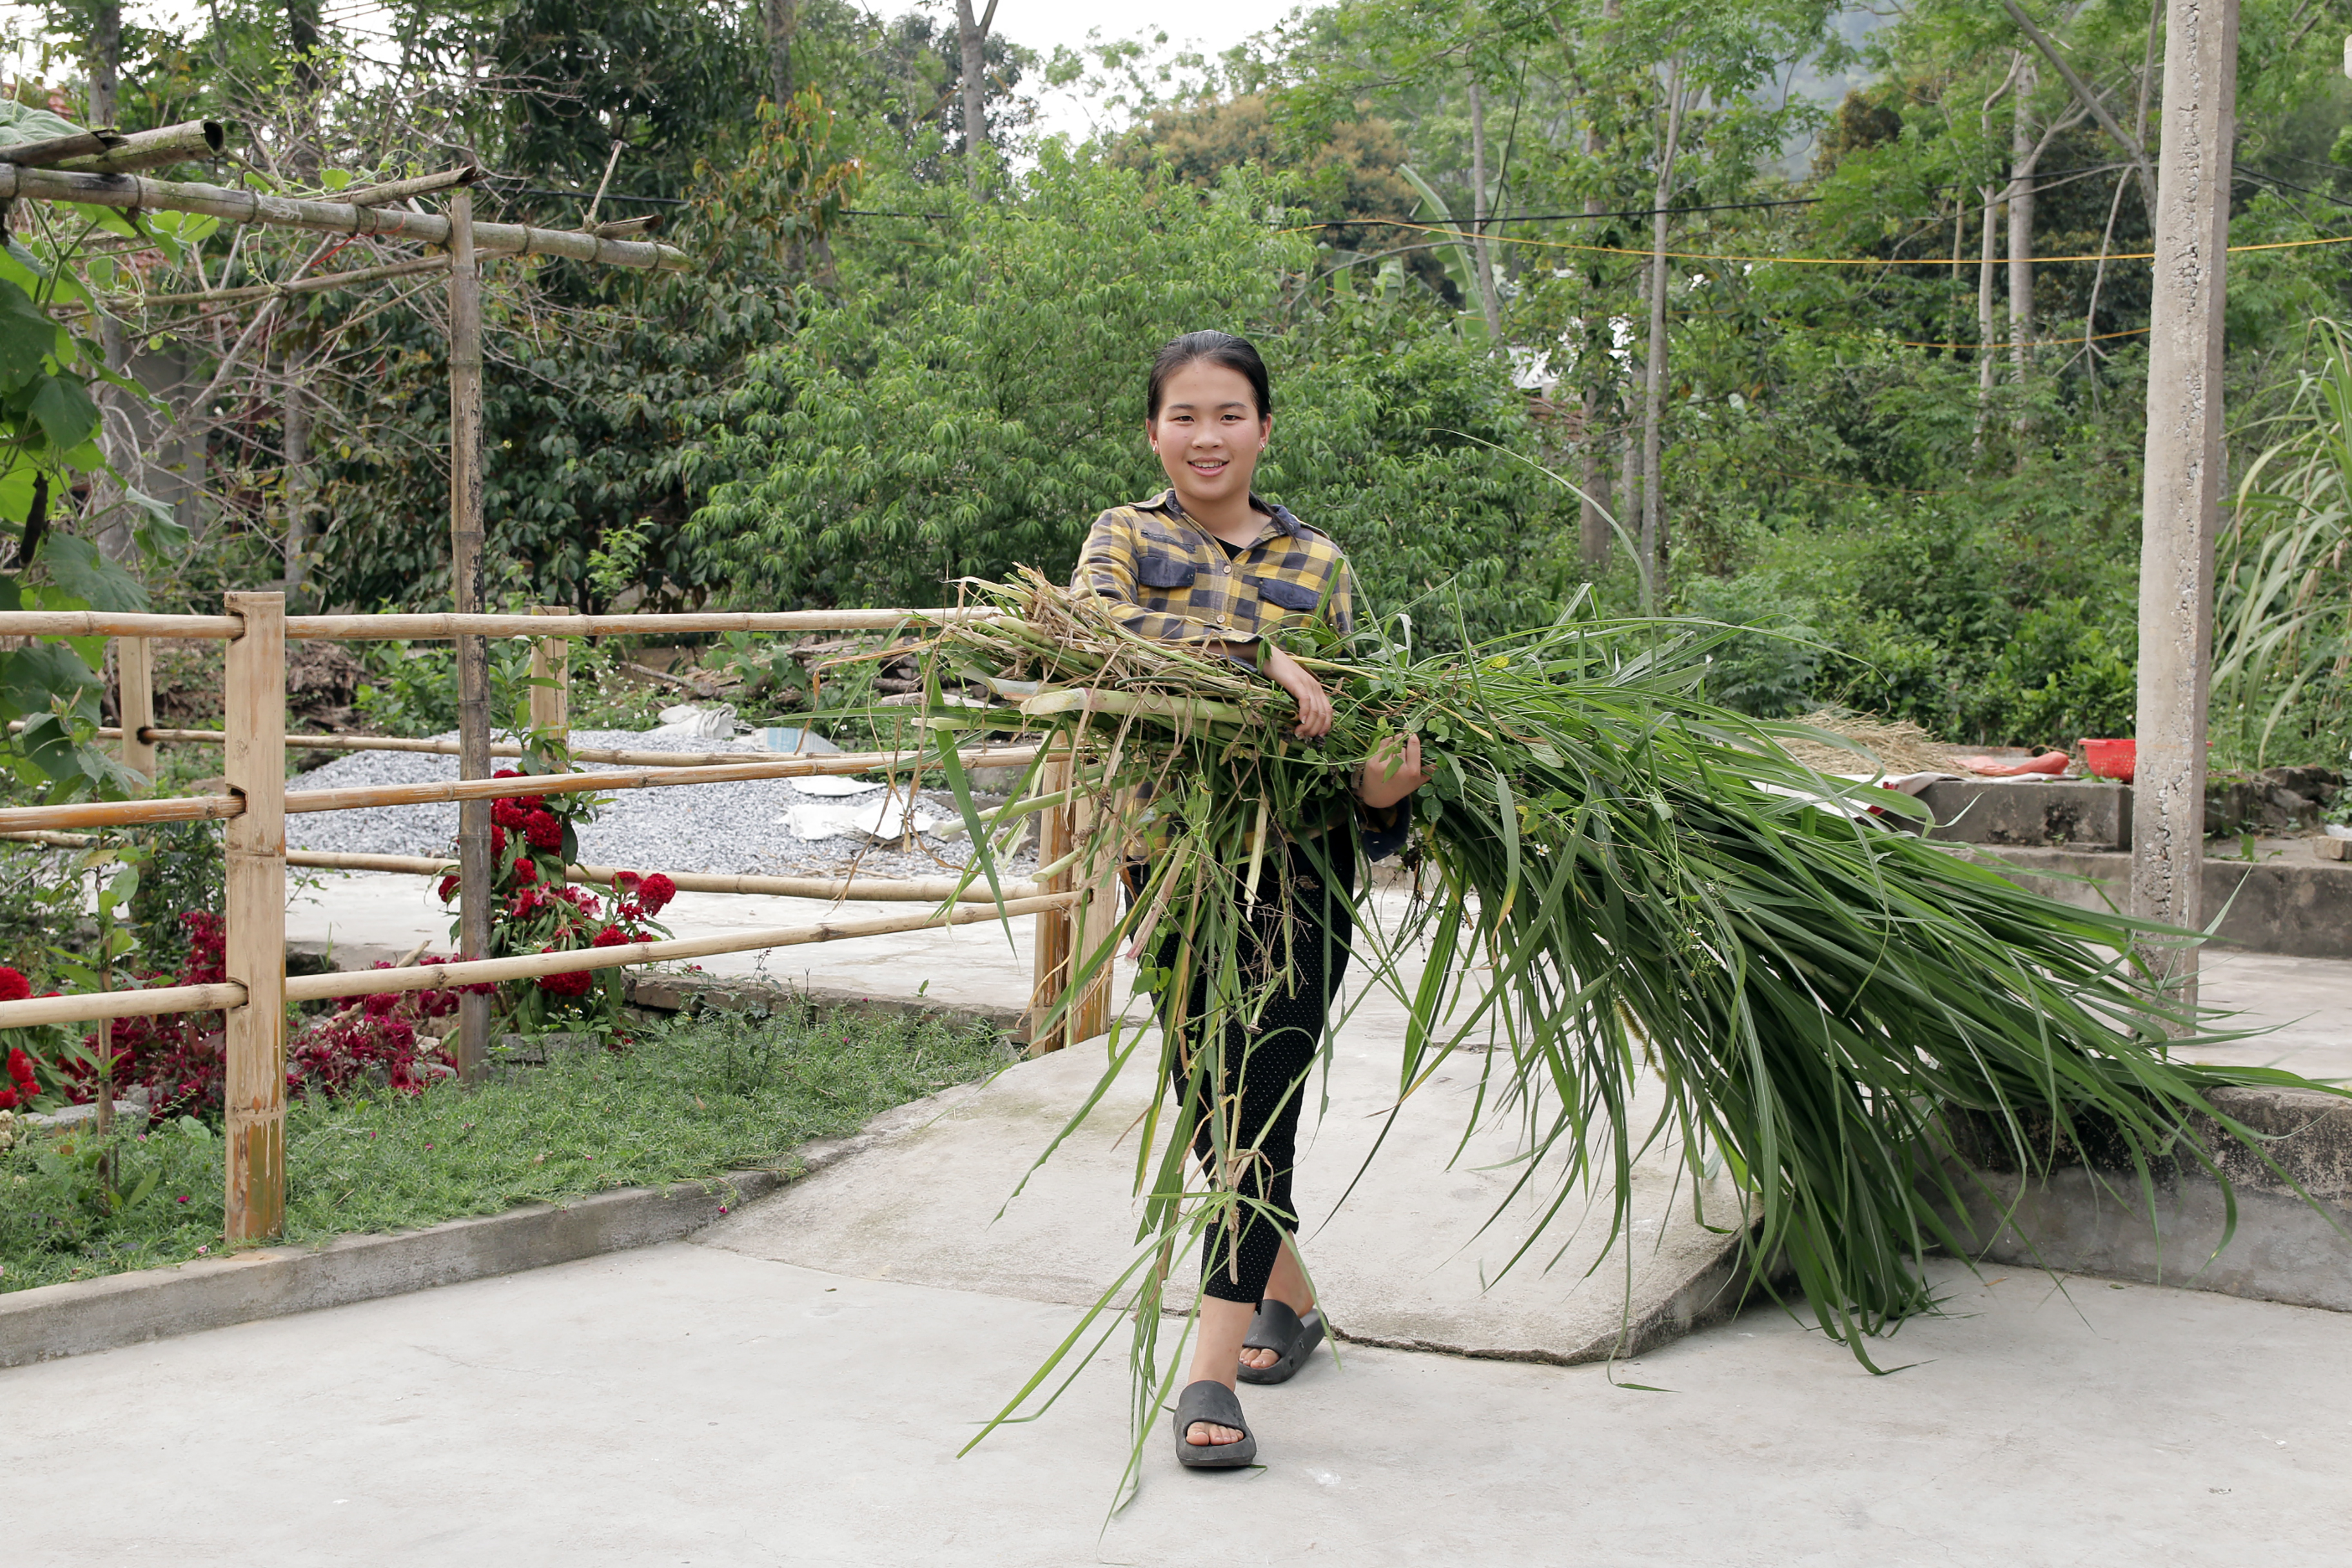 5. Ngoài thời gian dành cho học tập, Nguyễn Thị Hoài Linh còn phụ giúp bố mẹ việc nhà. 